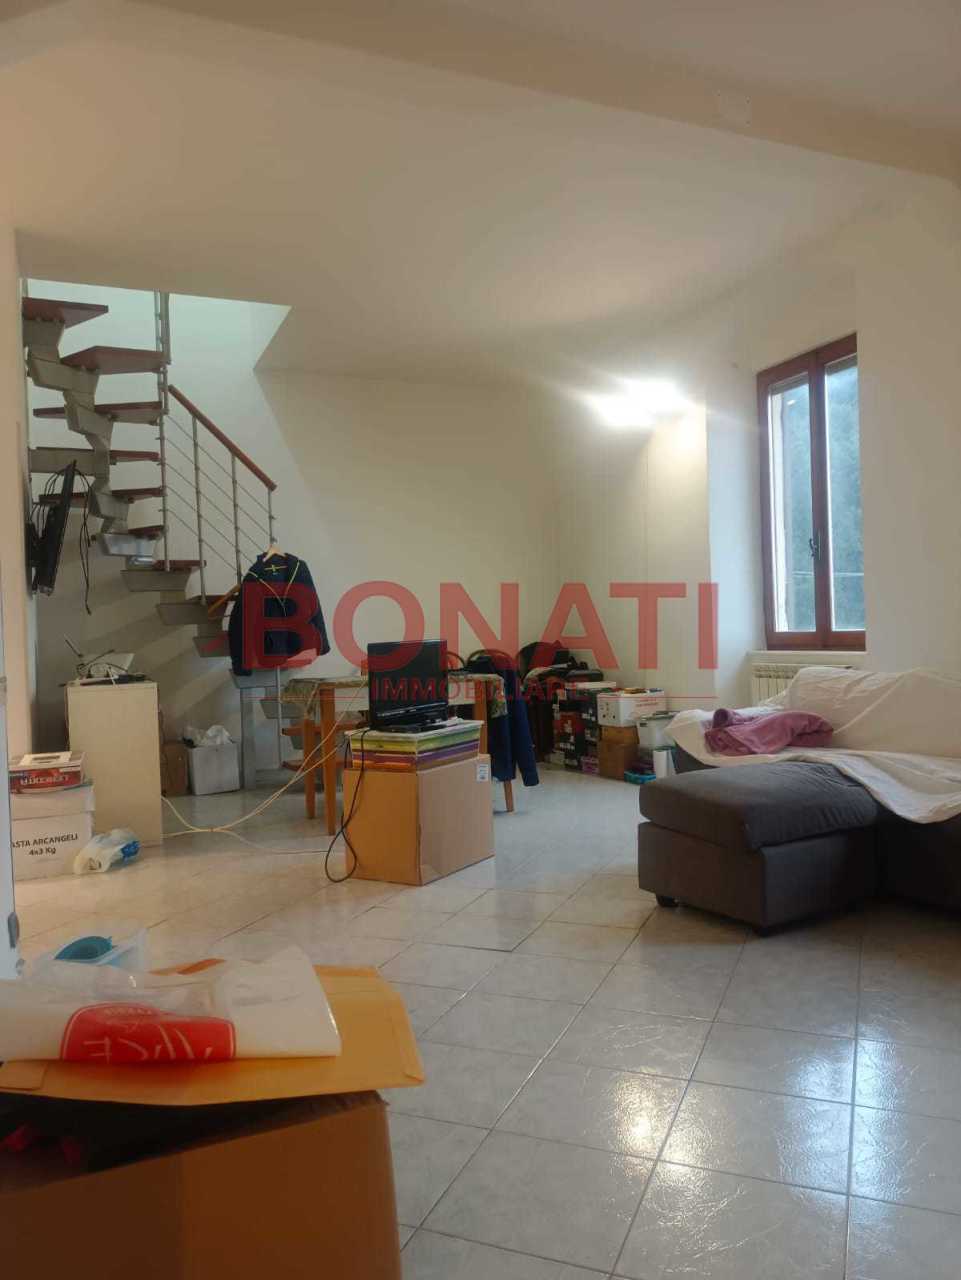 Appartamento in vendita a La Spezia, 5 locali, prezzo € 130.000 | PortaleAgenzieImmobiliari.it